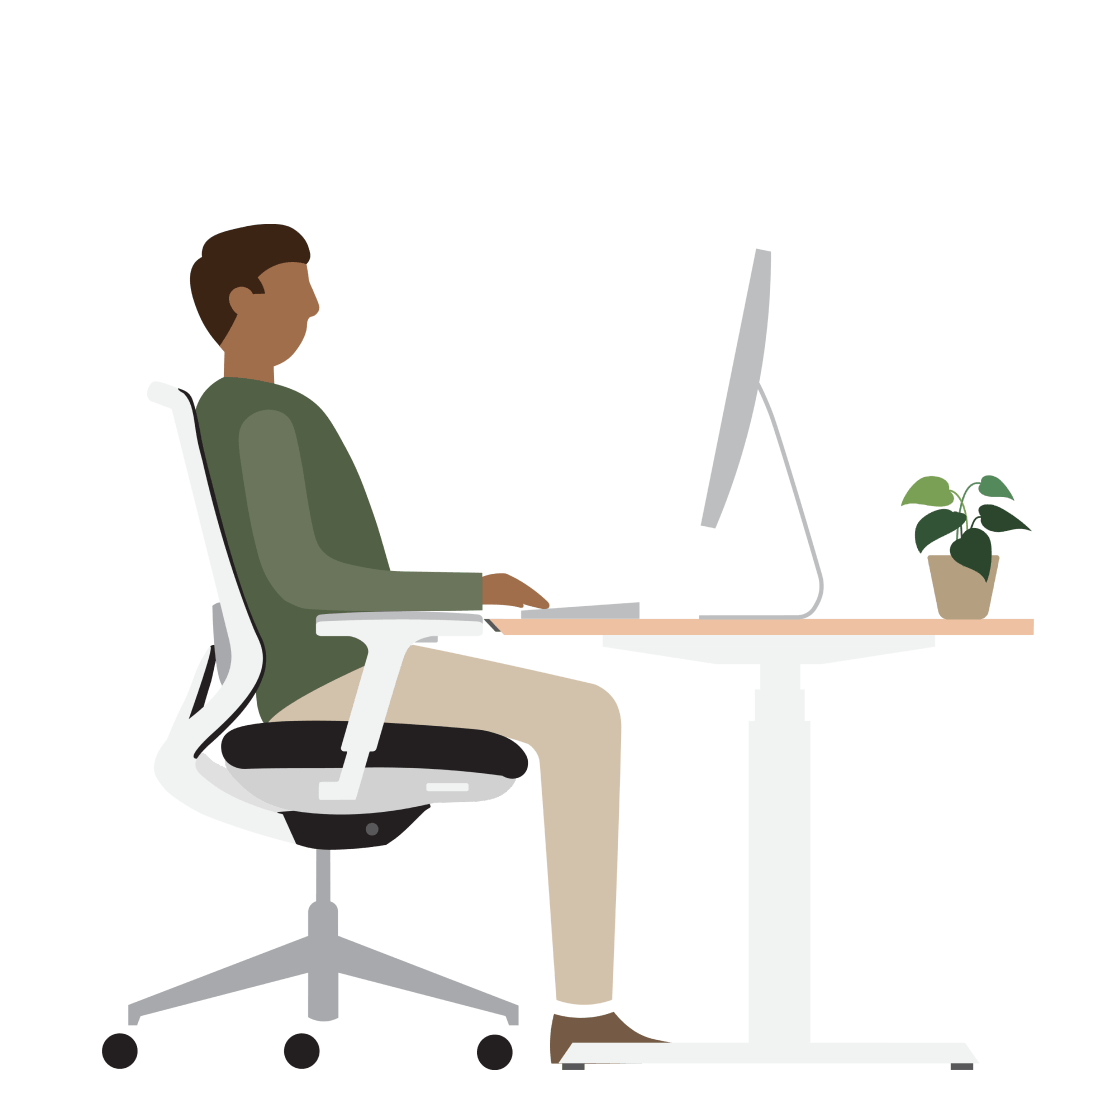 Una ilustración de un hombre sentado en un escritorio